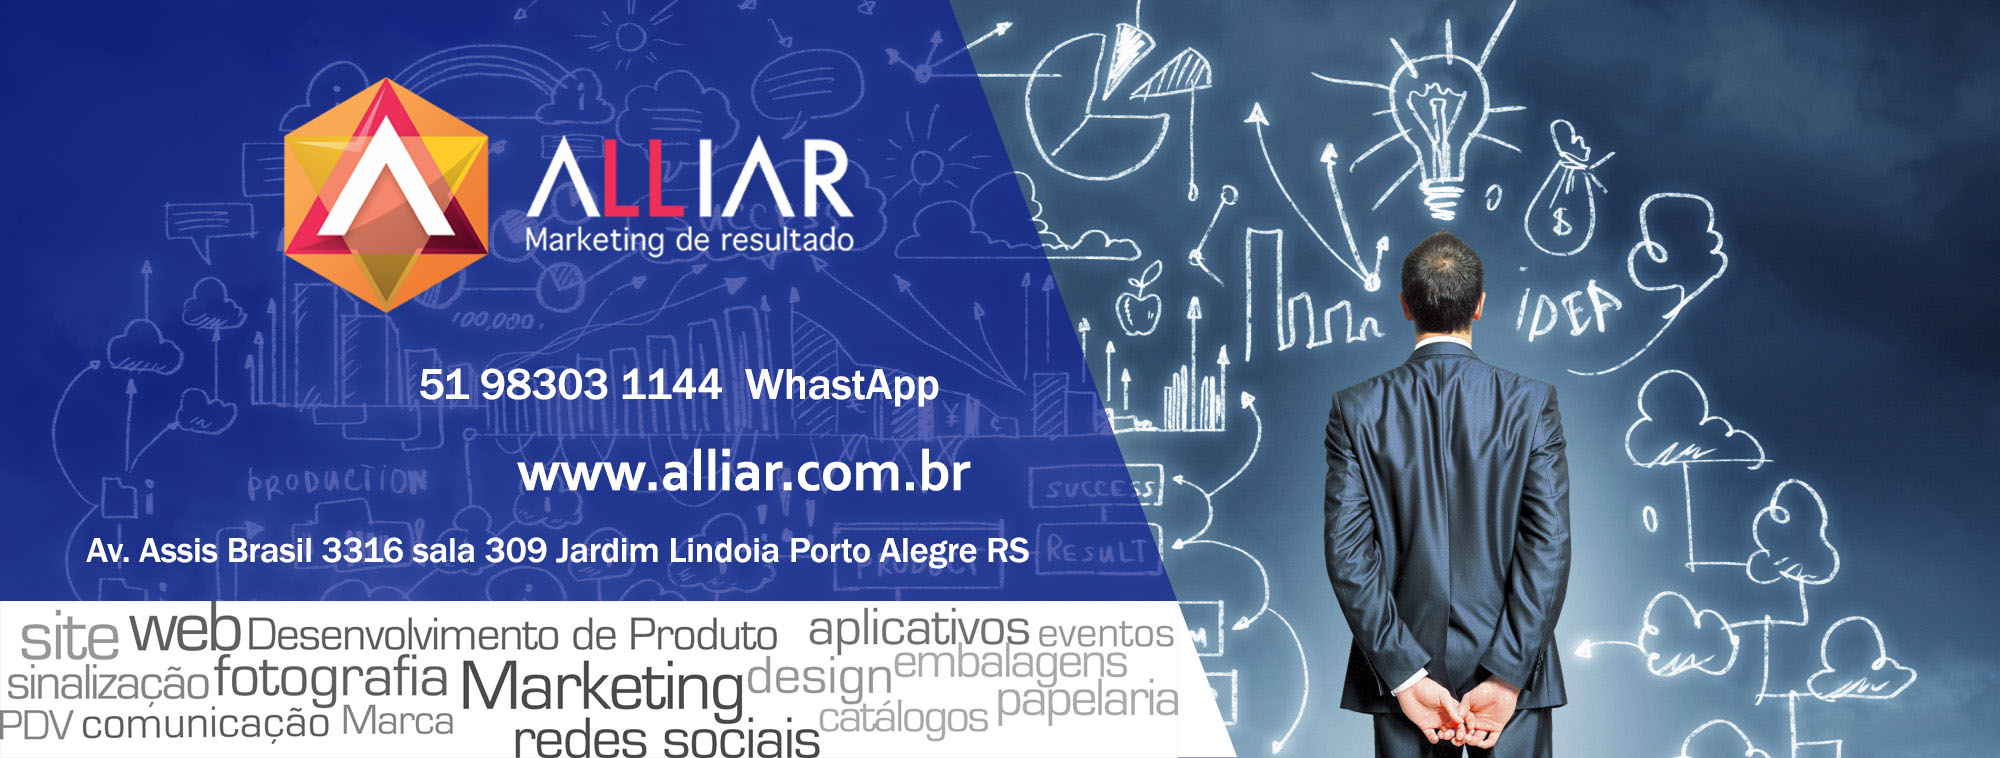 (c) Alliar.com.br